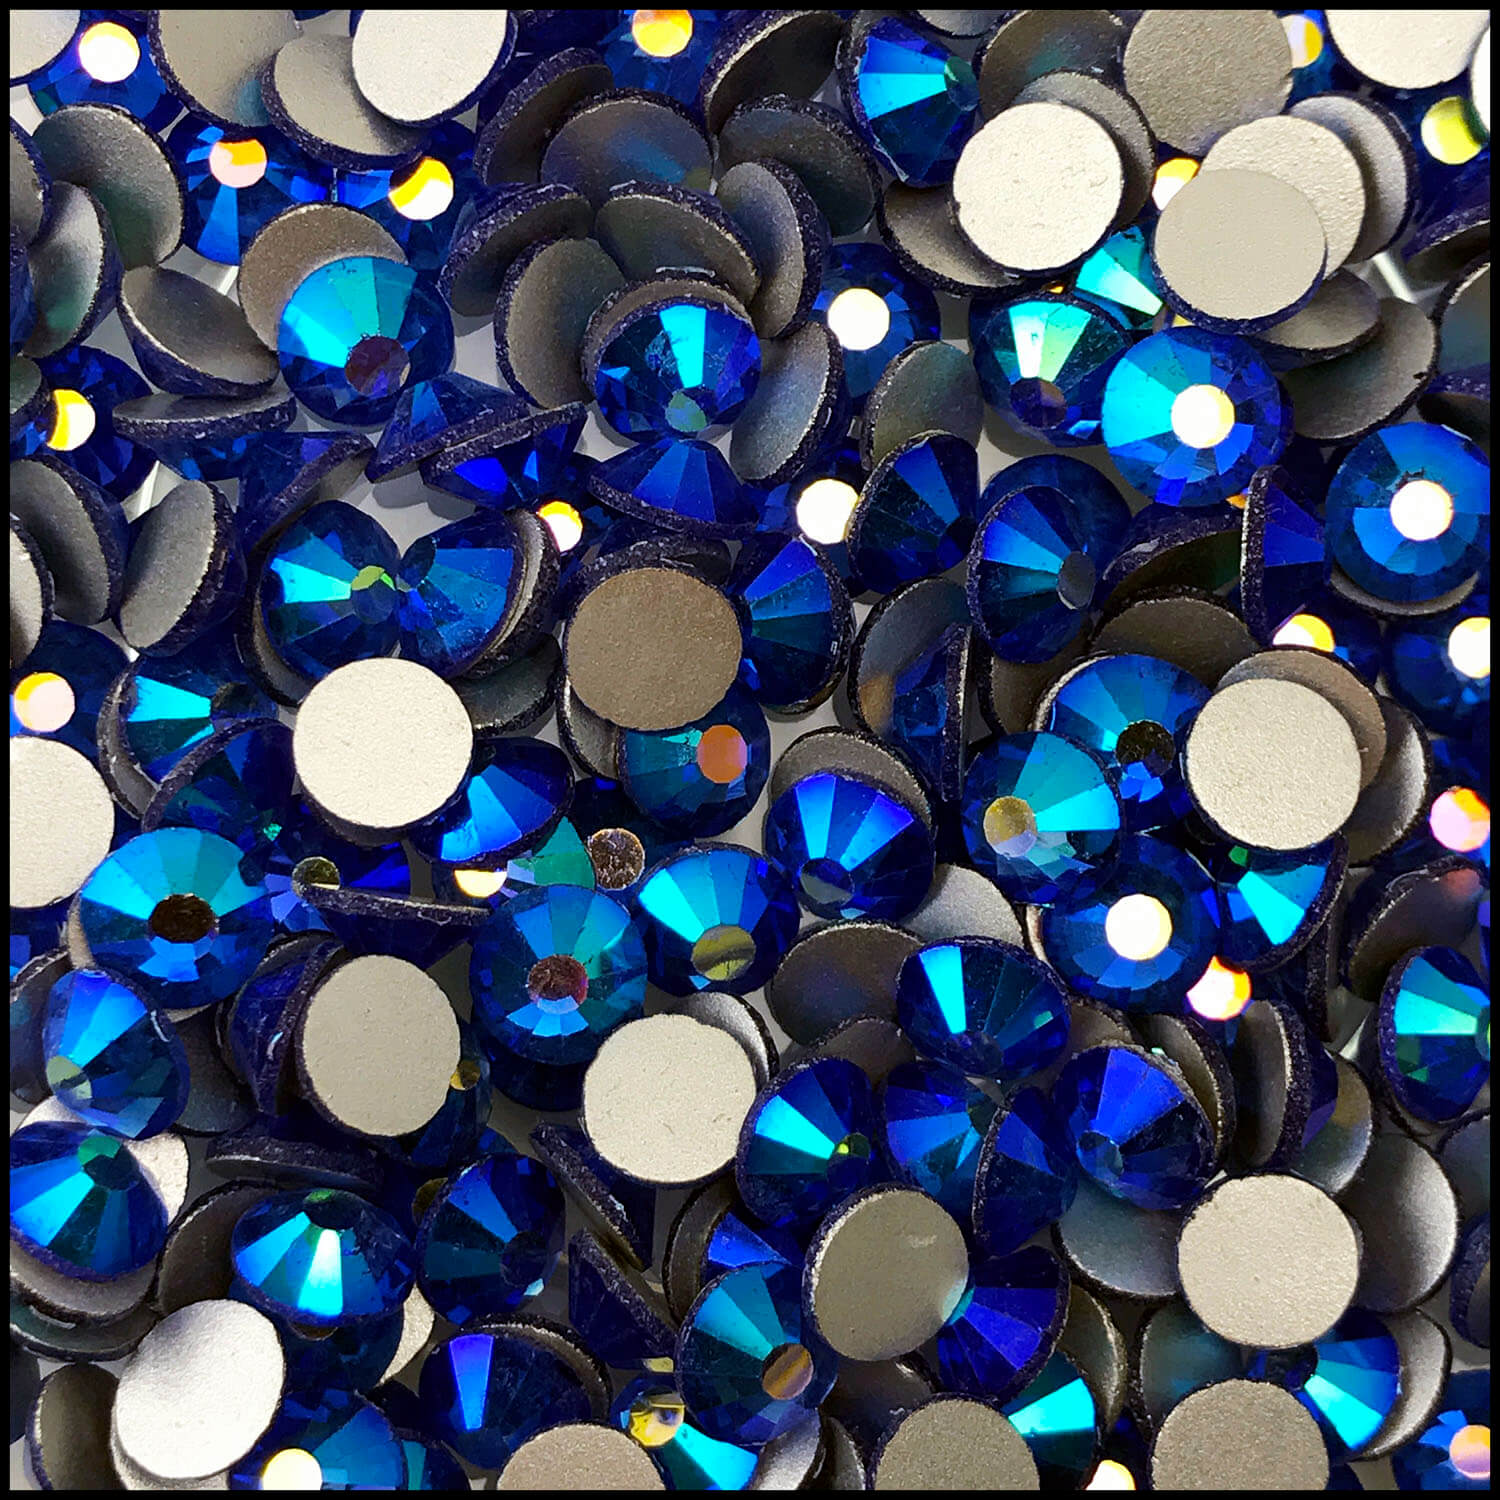 ThreadNanny Czech 3mm/10ss 10gross (1440Pcs)Hotfix Rhinestones Crystals  Navy Blue (Sapphire) Color 